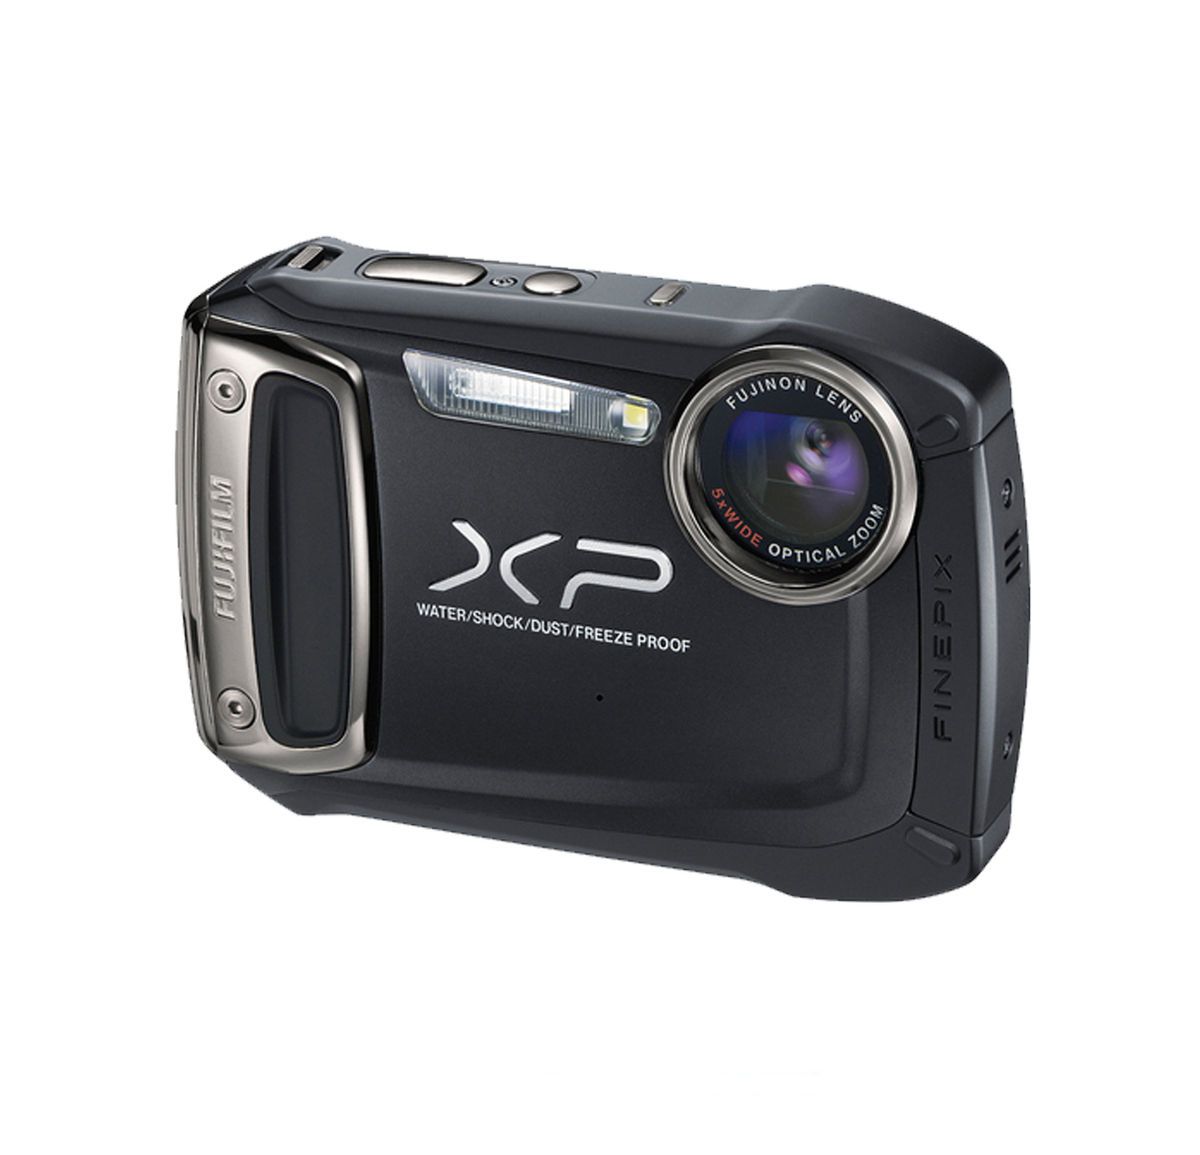 Fujifilm Finepix XP100 Waterproof Digital Camera BLACK + FUJI USA 